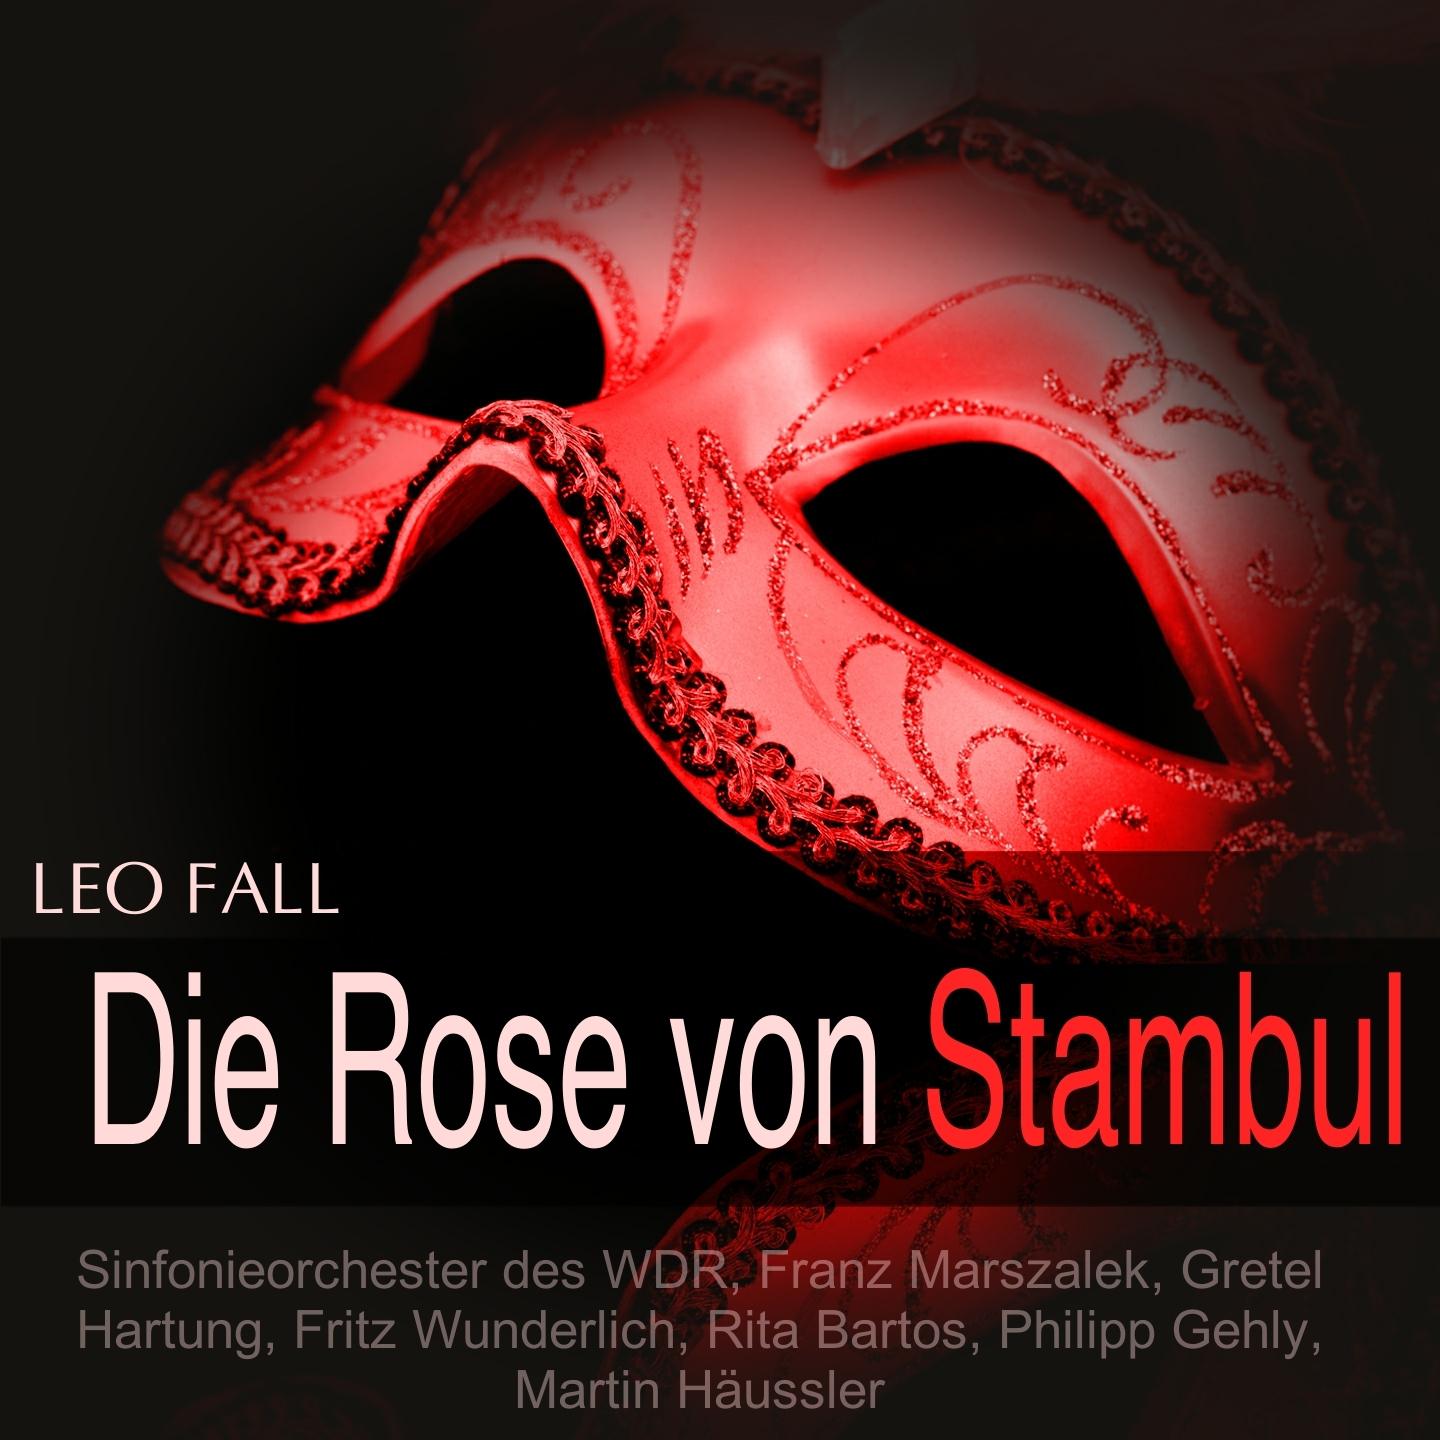 Die Rose von Stambul, Act I: "Wenn die Sonne" (Kondja, Chor)